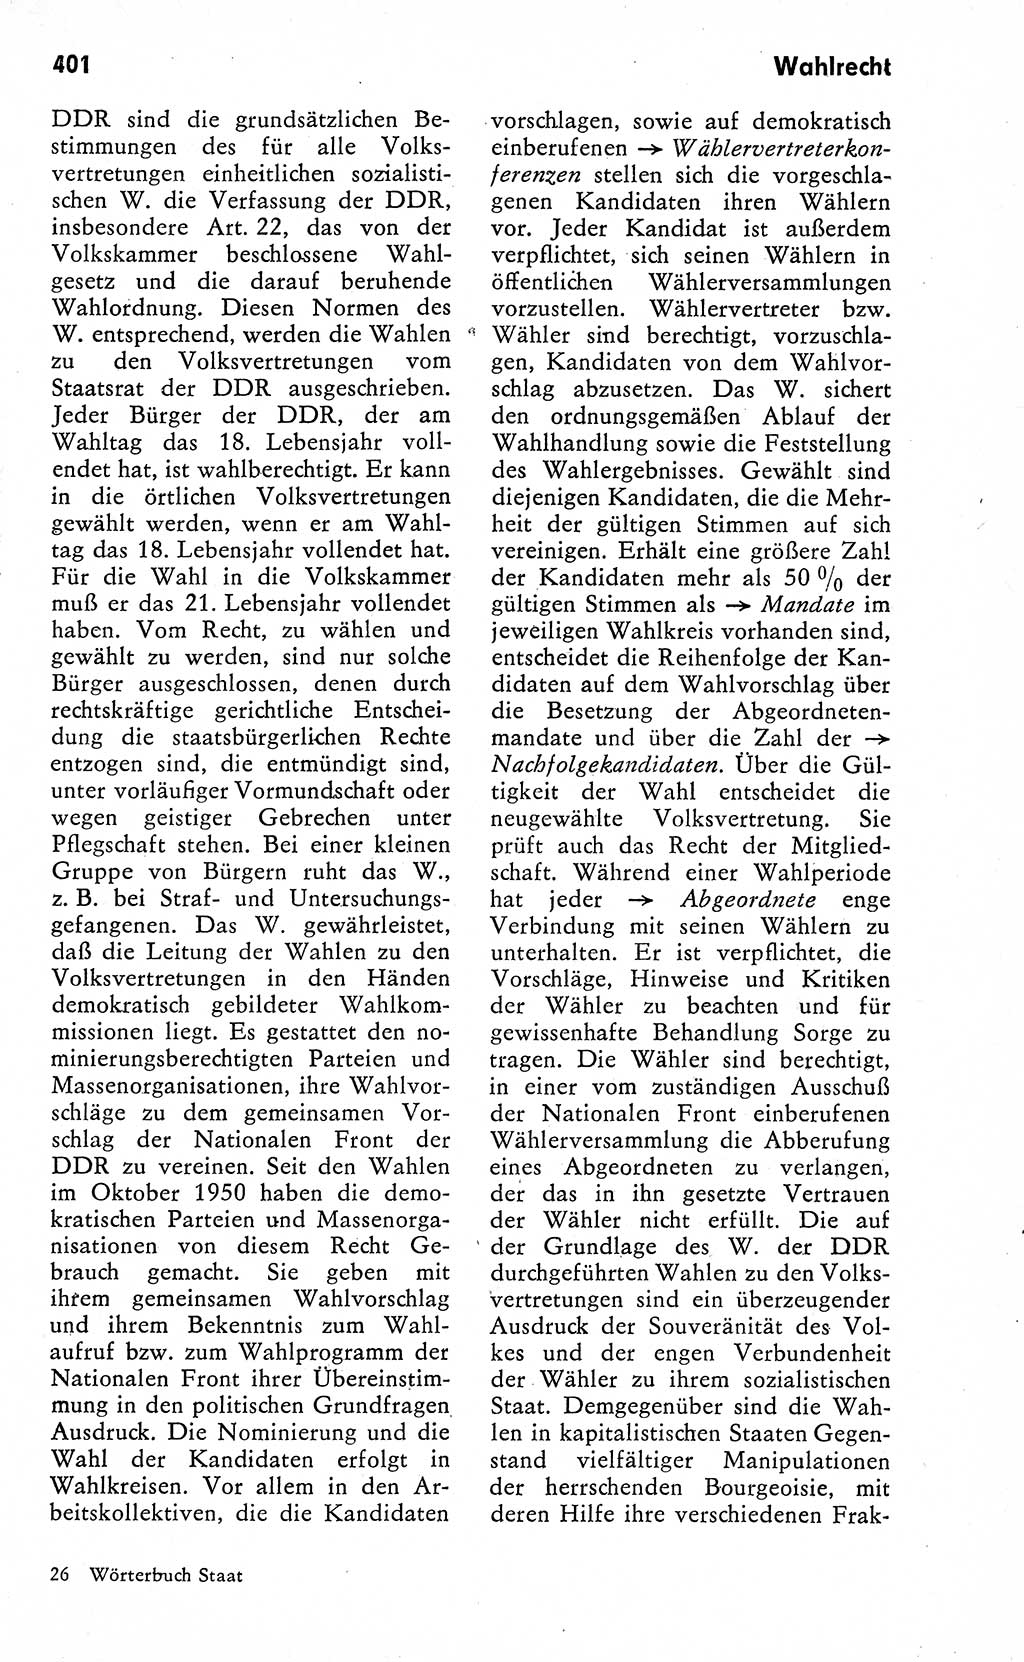 Wörterbuch zum sozialistischen Staat [Deutsche Demokratische Republik (DDR)] 1974, Seite 401 (Wb. soz. St. DDR 1974, S. 401)